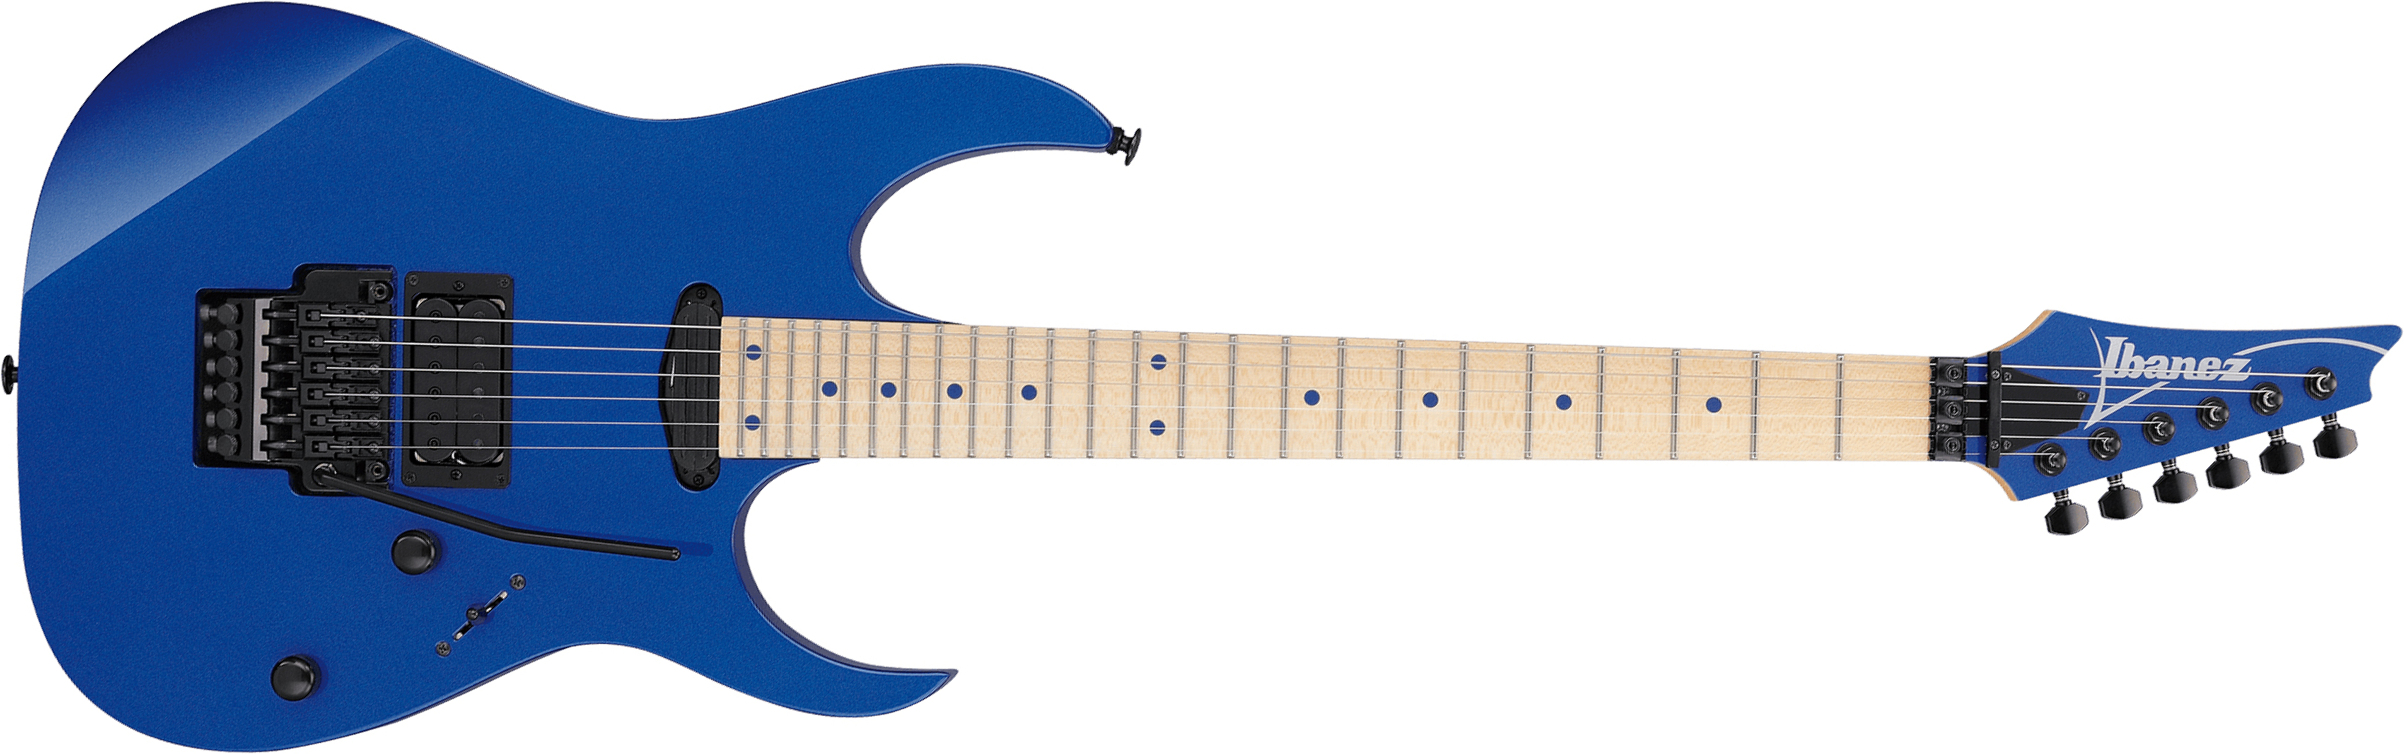 Ibanez Rg565 Lb Genesis Jap Hst Fr Mn - Laser Blue - E-Gitarre in Str-Form - Main picture